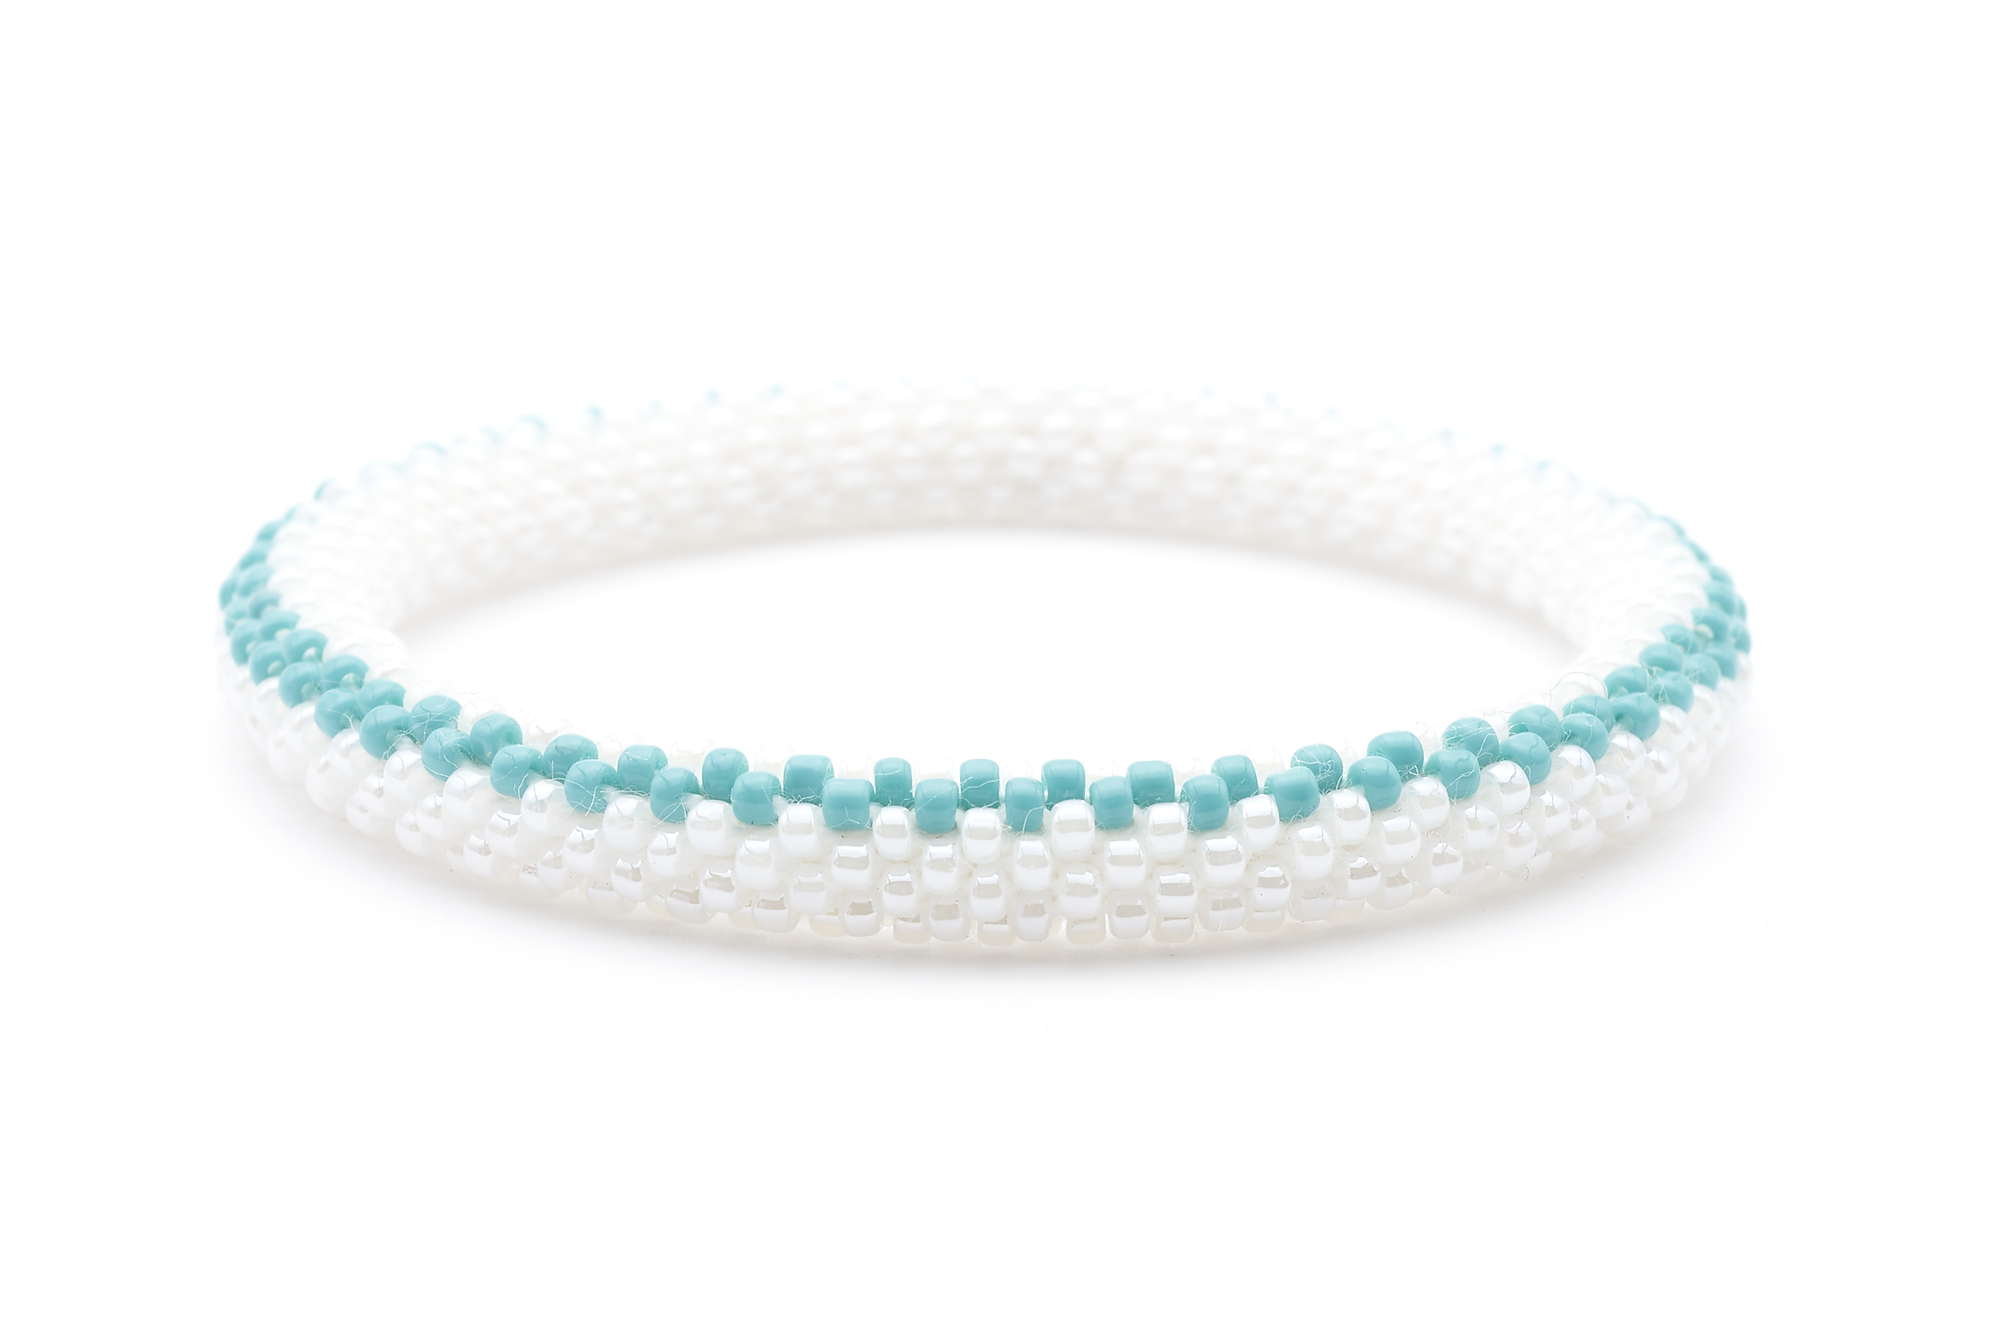 Sashka Co. Extended 8" Bracelet White / Turquoise Surfboard Bracelet - Extended 8"